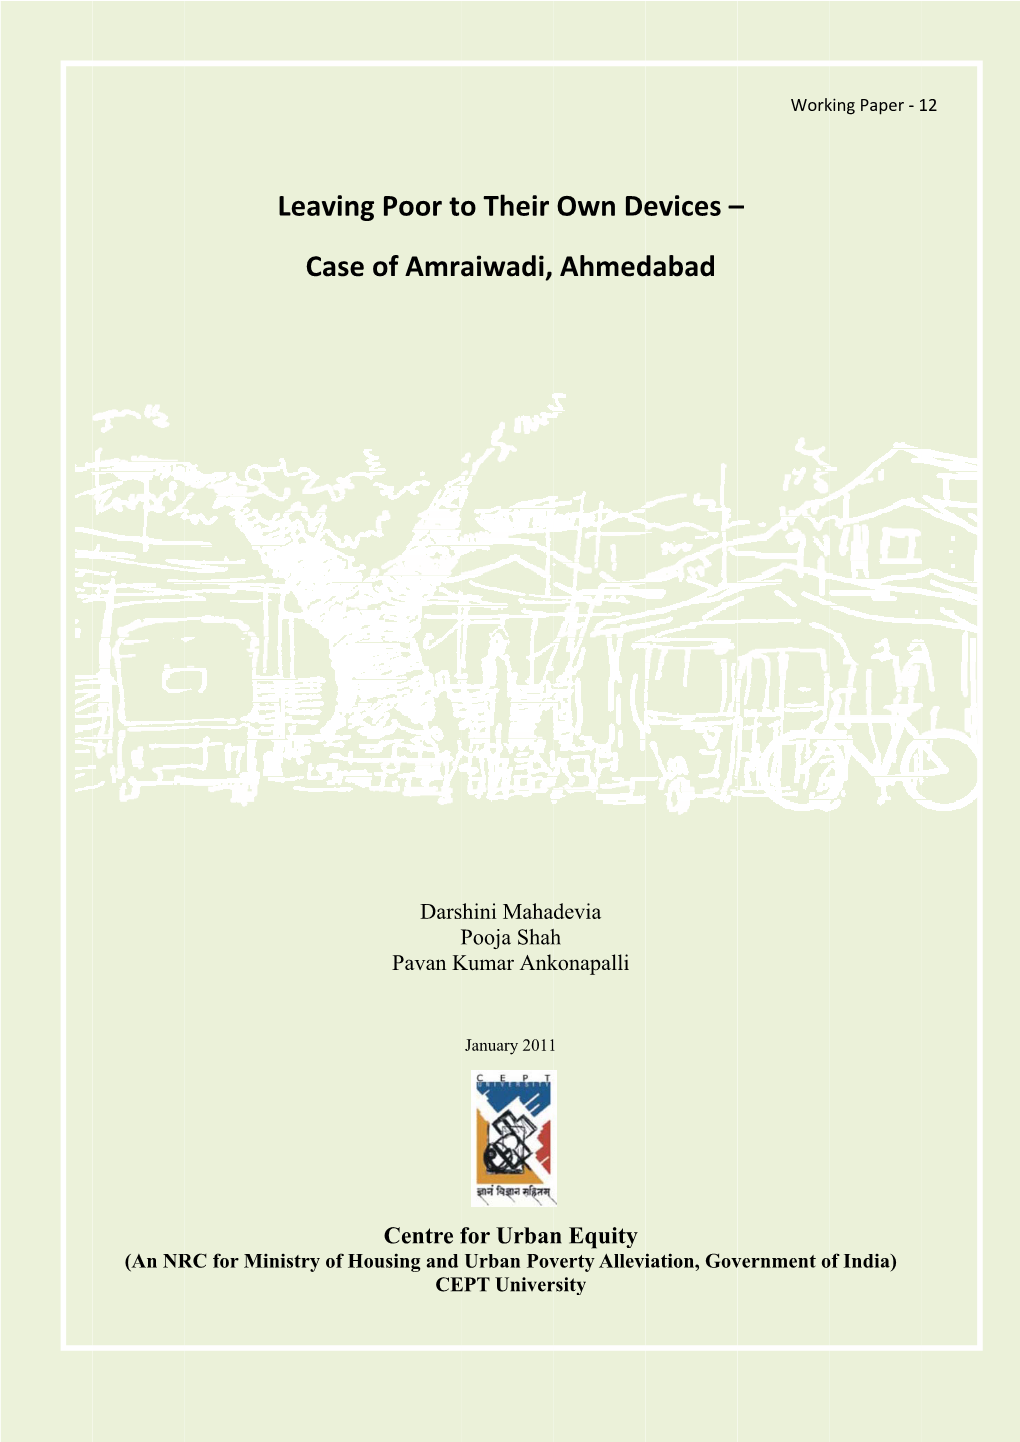 Case of Amraiwadi, Ahmedabad